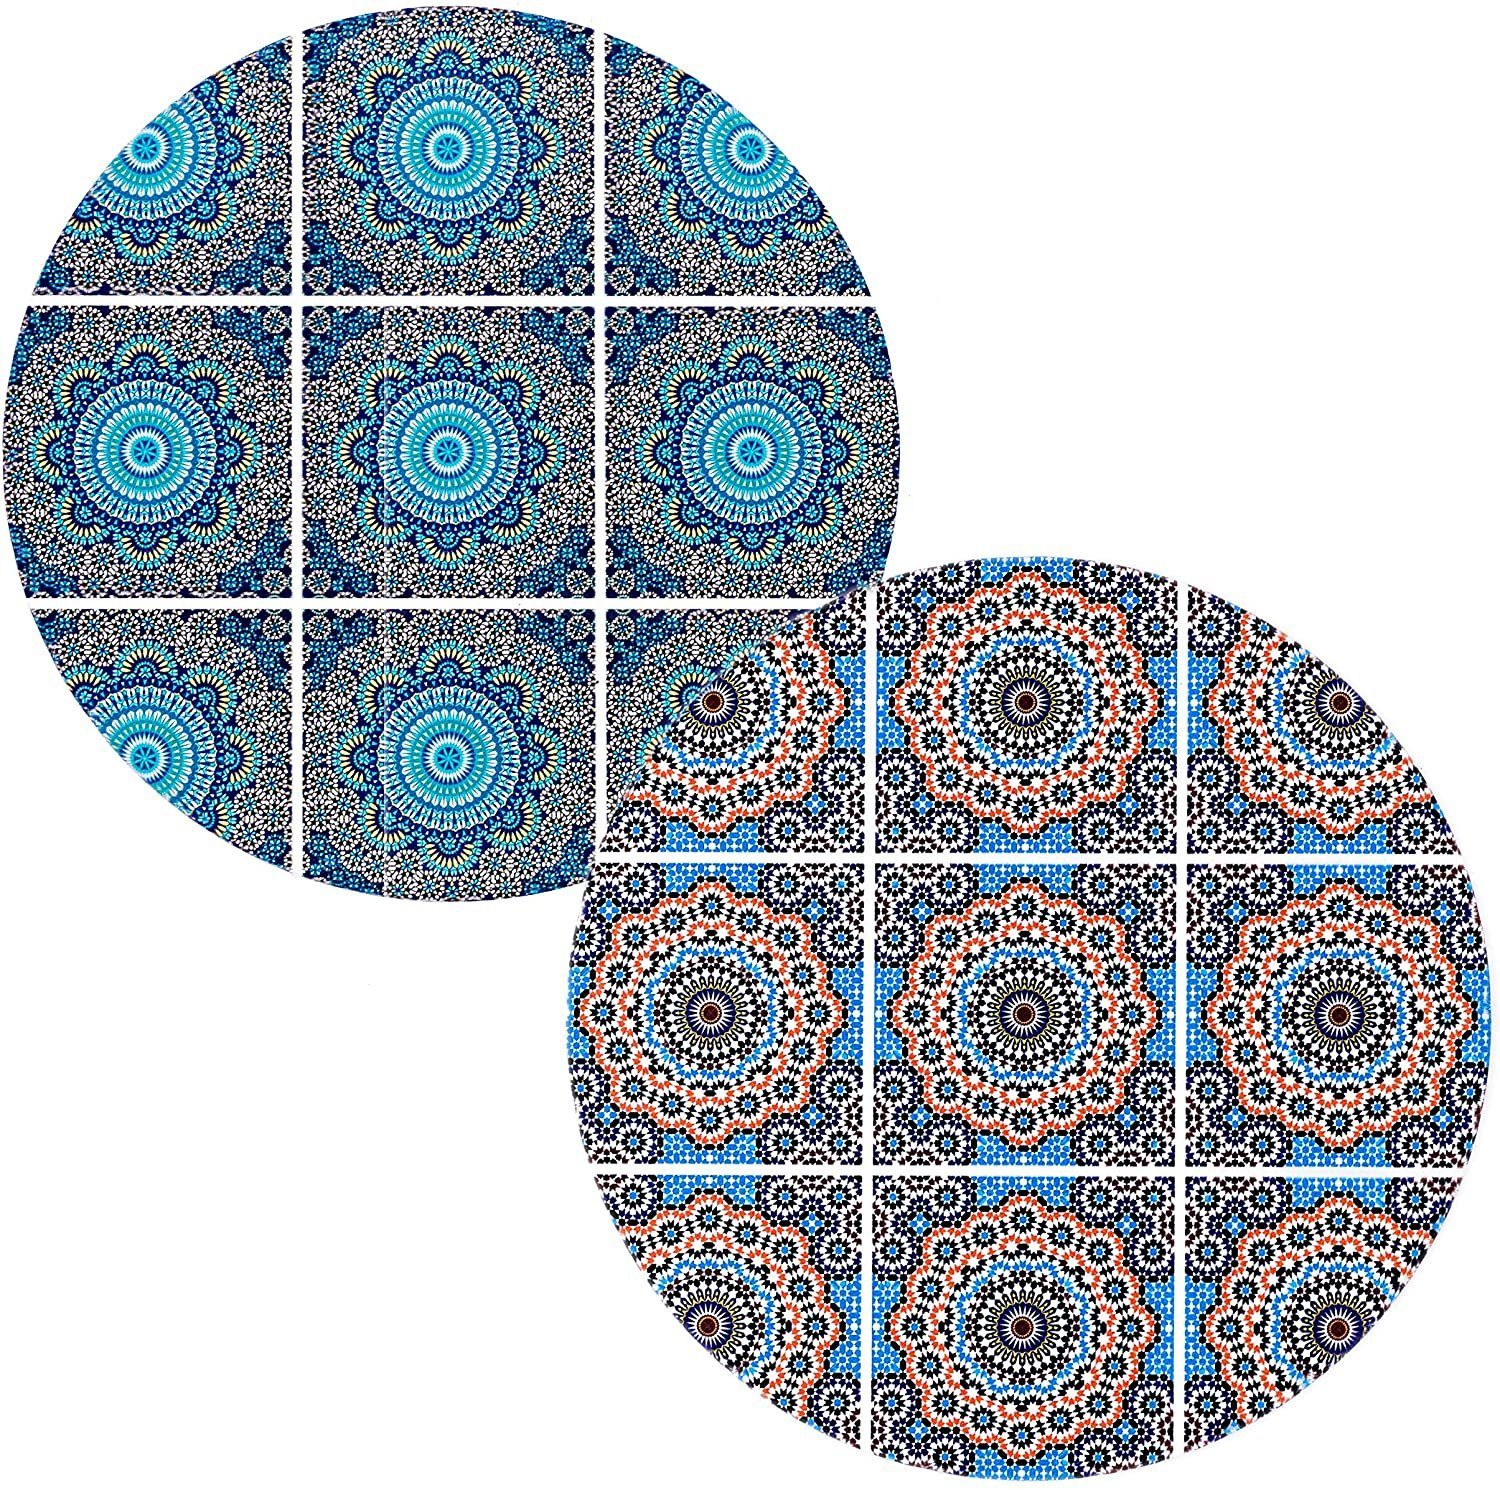 Topfuntersetzer Mosaic (rund, Keramik Moroccan Topfuntersetzer 2er BOHORIA Set Keramik 18cm), Premium Design BOHORIA®